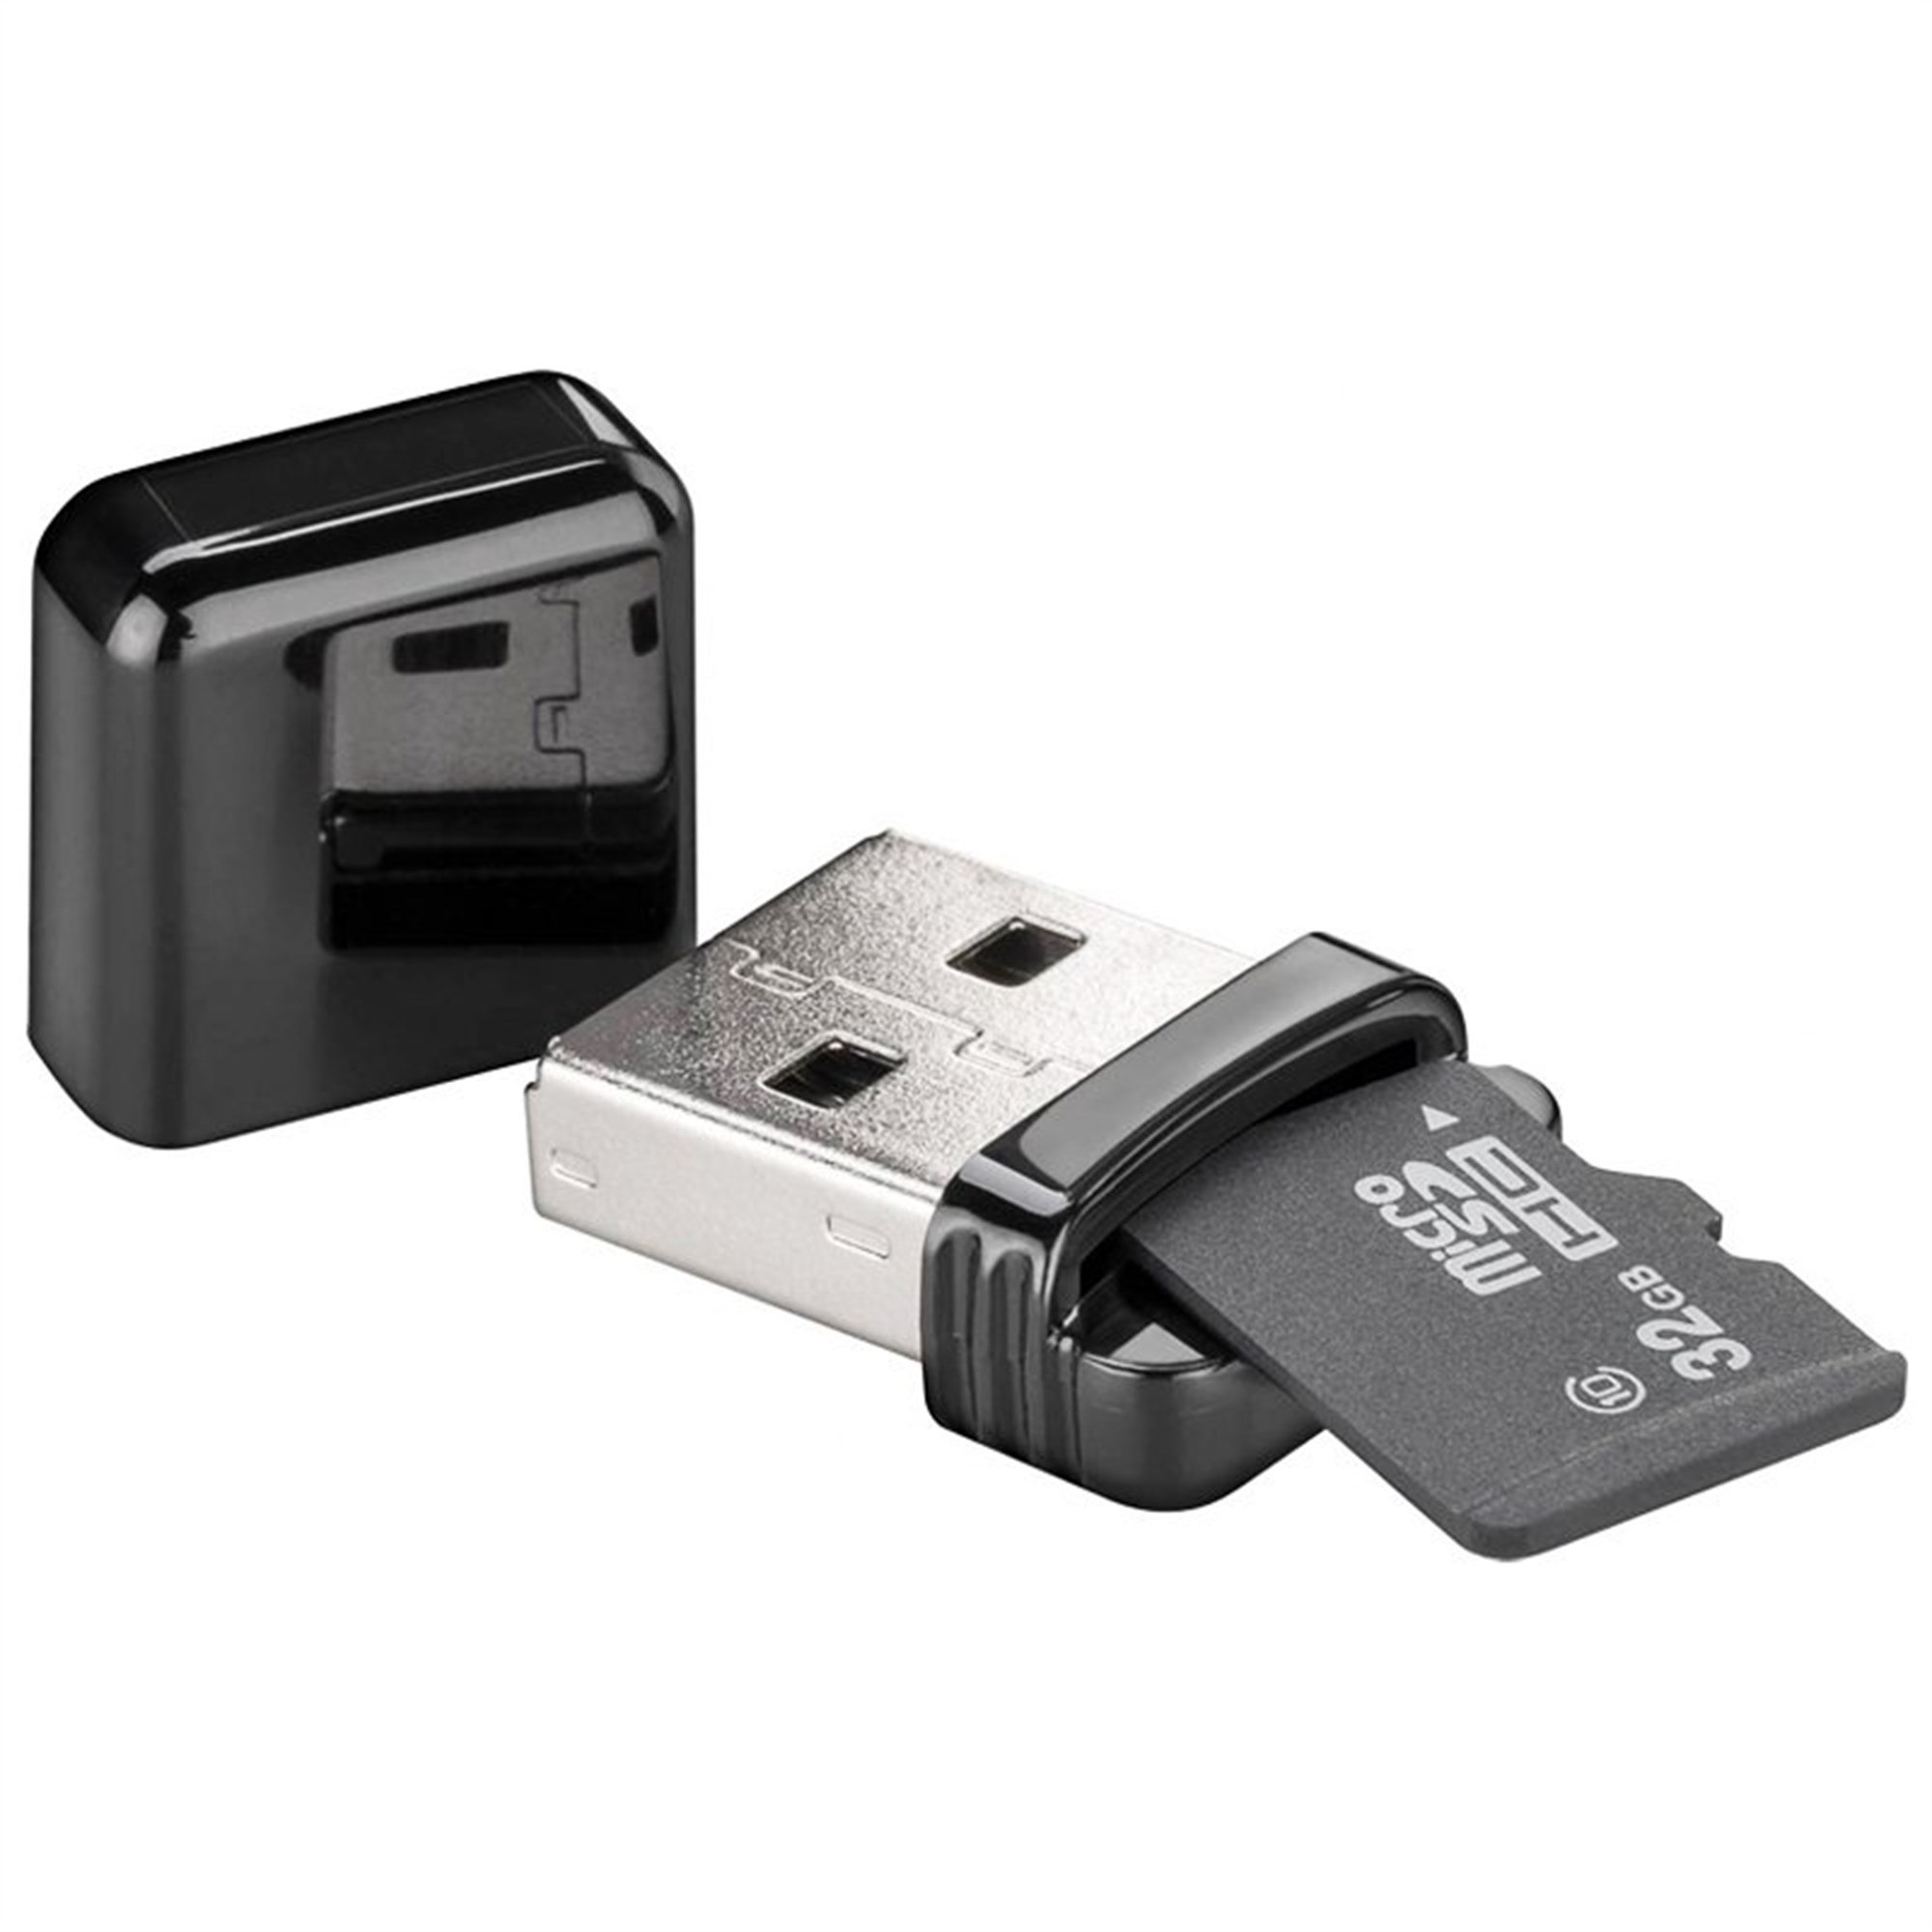 Micro SD ve SD bellek kartı formatlarını okumak için kart okuyucu USB 2.0,  Micro SD, SDHC, SDXC ve T-Flash serisi Speic'i okur